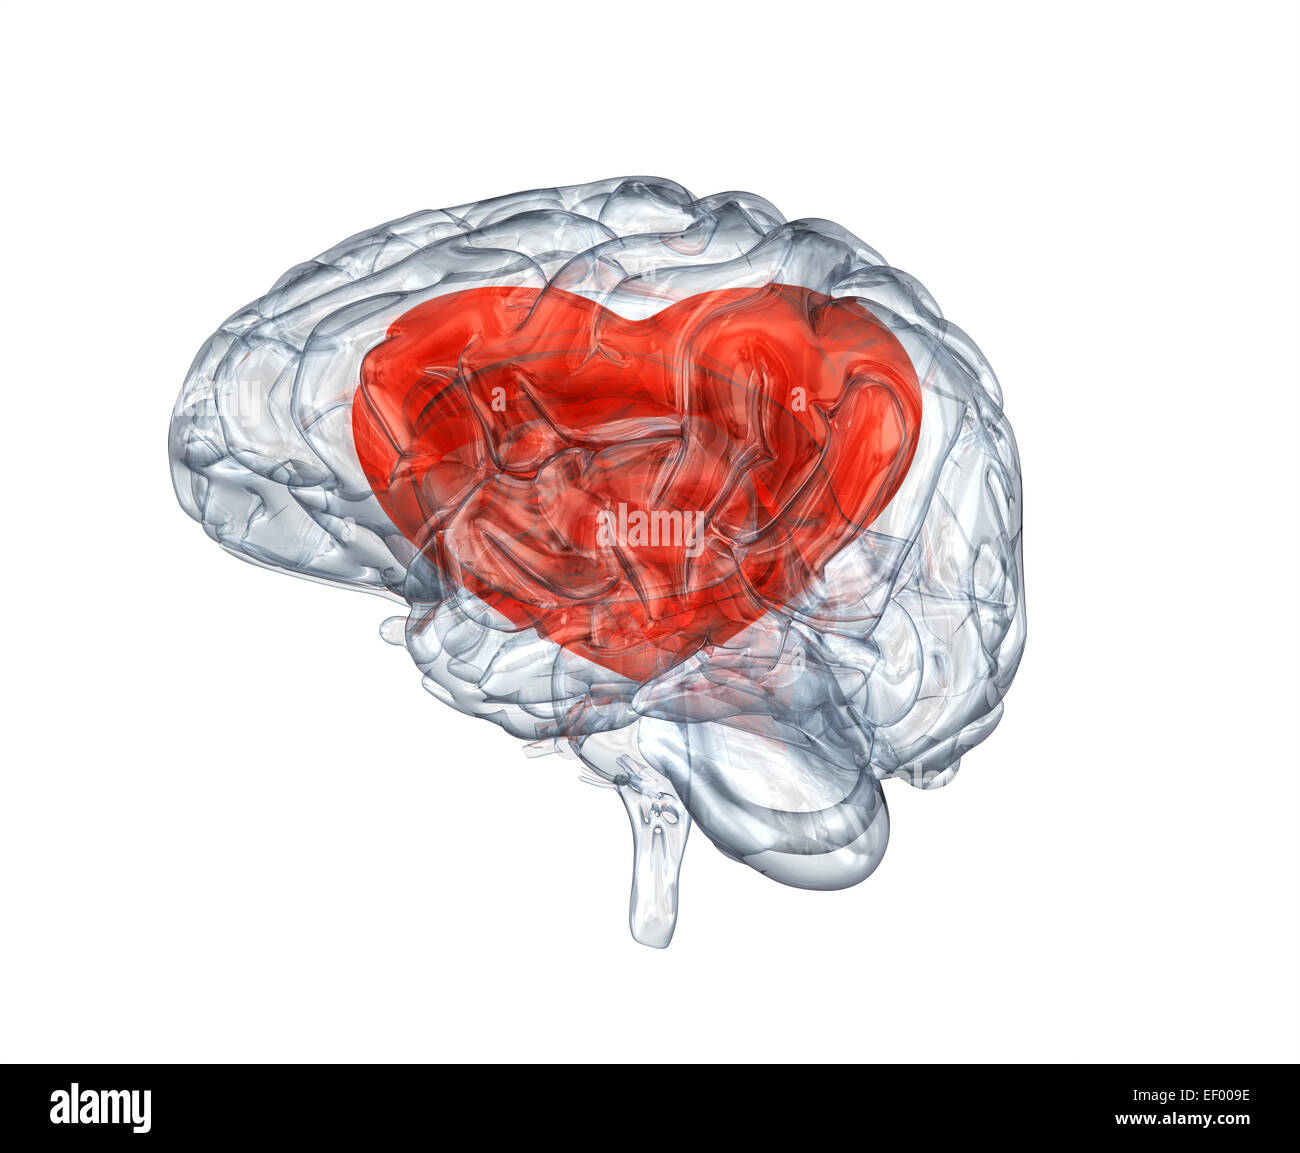 Glas menschlichen Gehirns mit Herzen. Clipping-Pfad enthalten Stockfoto